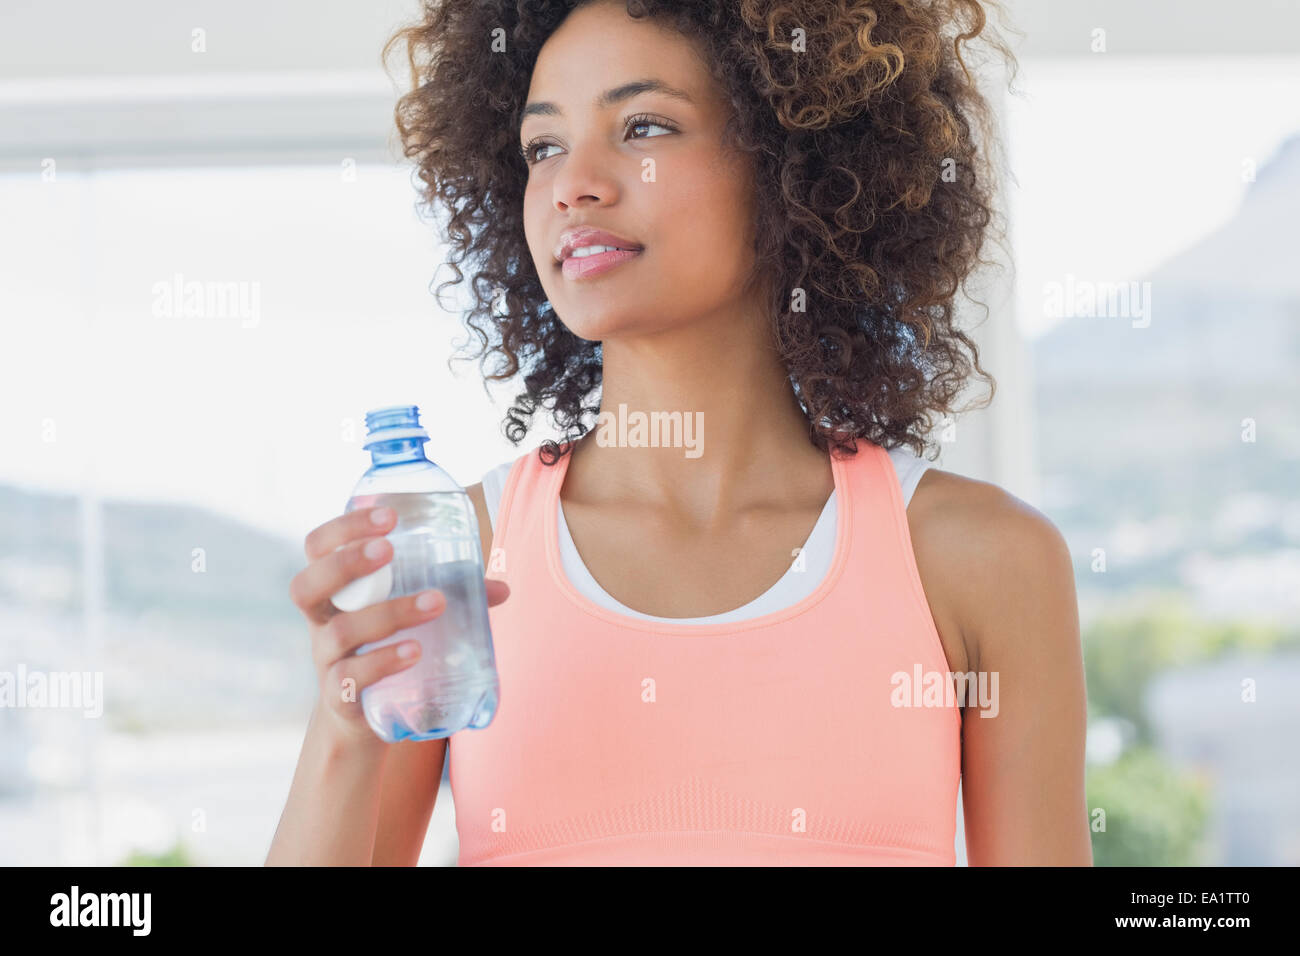 Mettre en place les holding water bottle at gym Banque D'Images